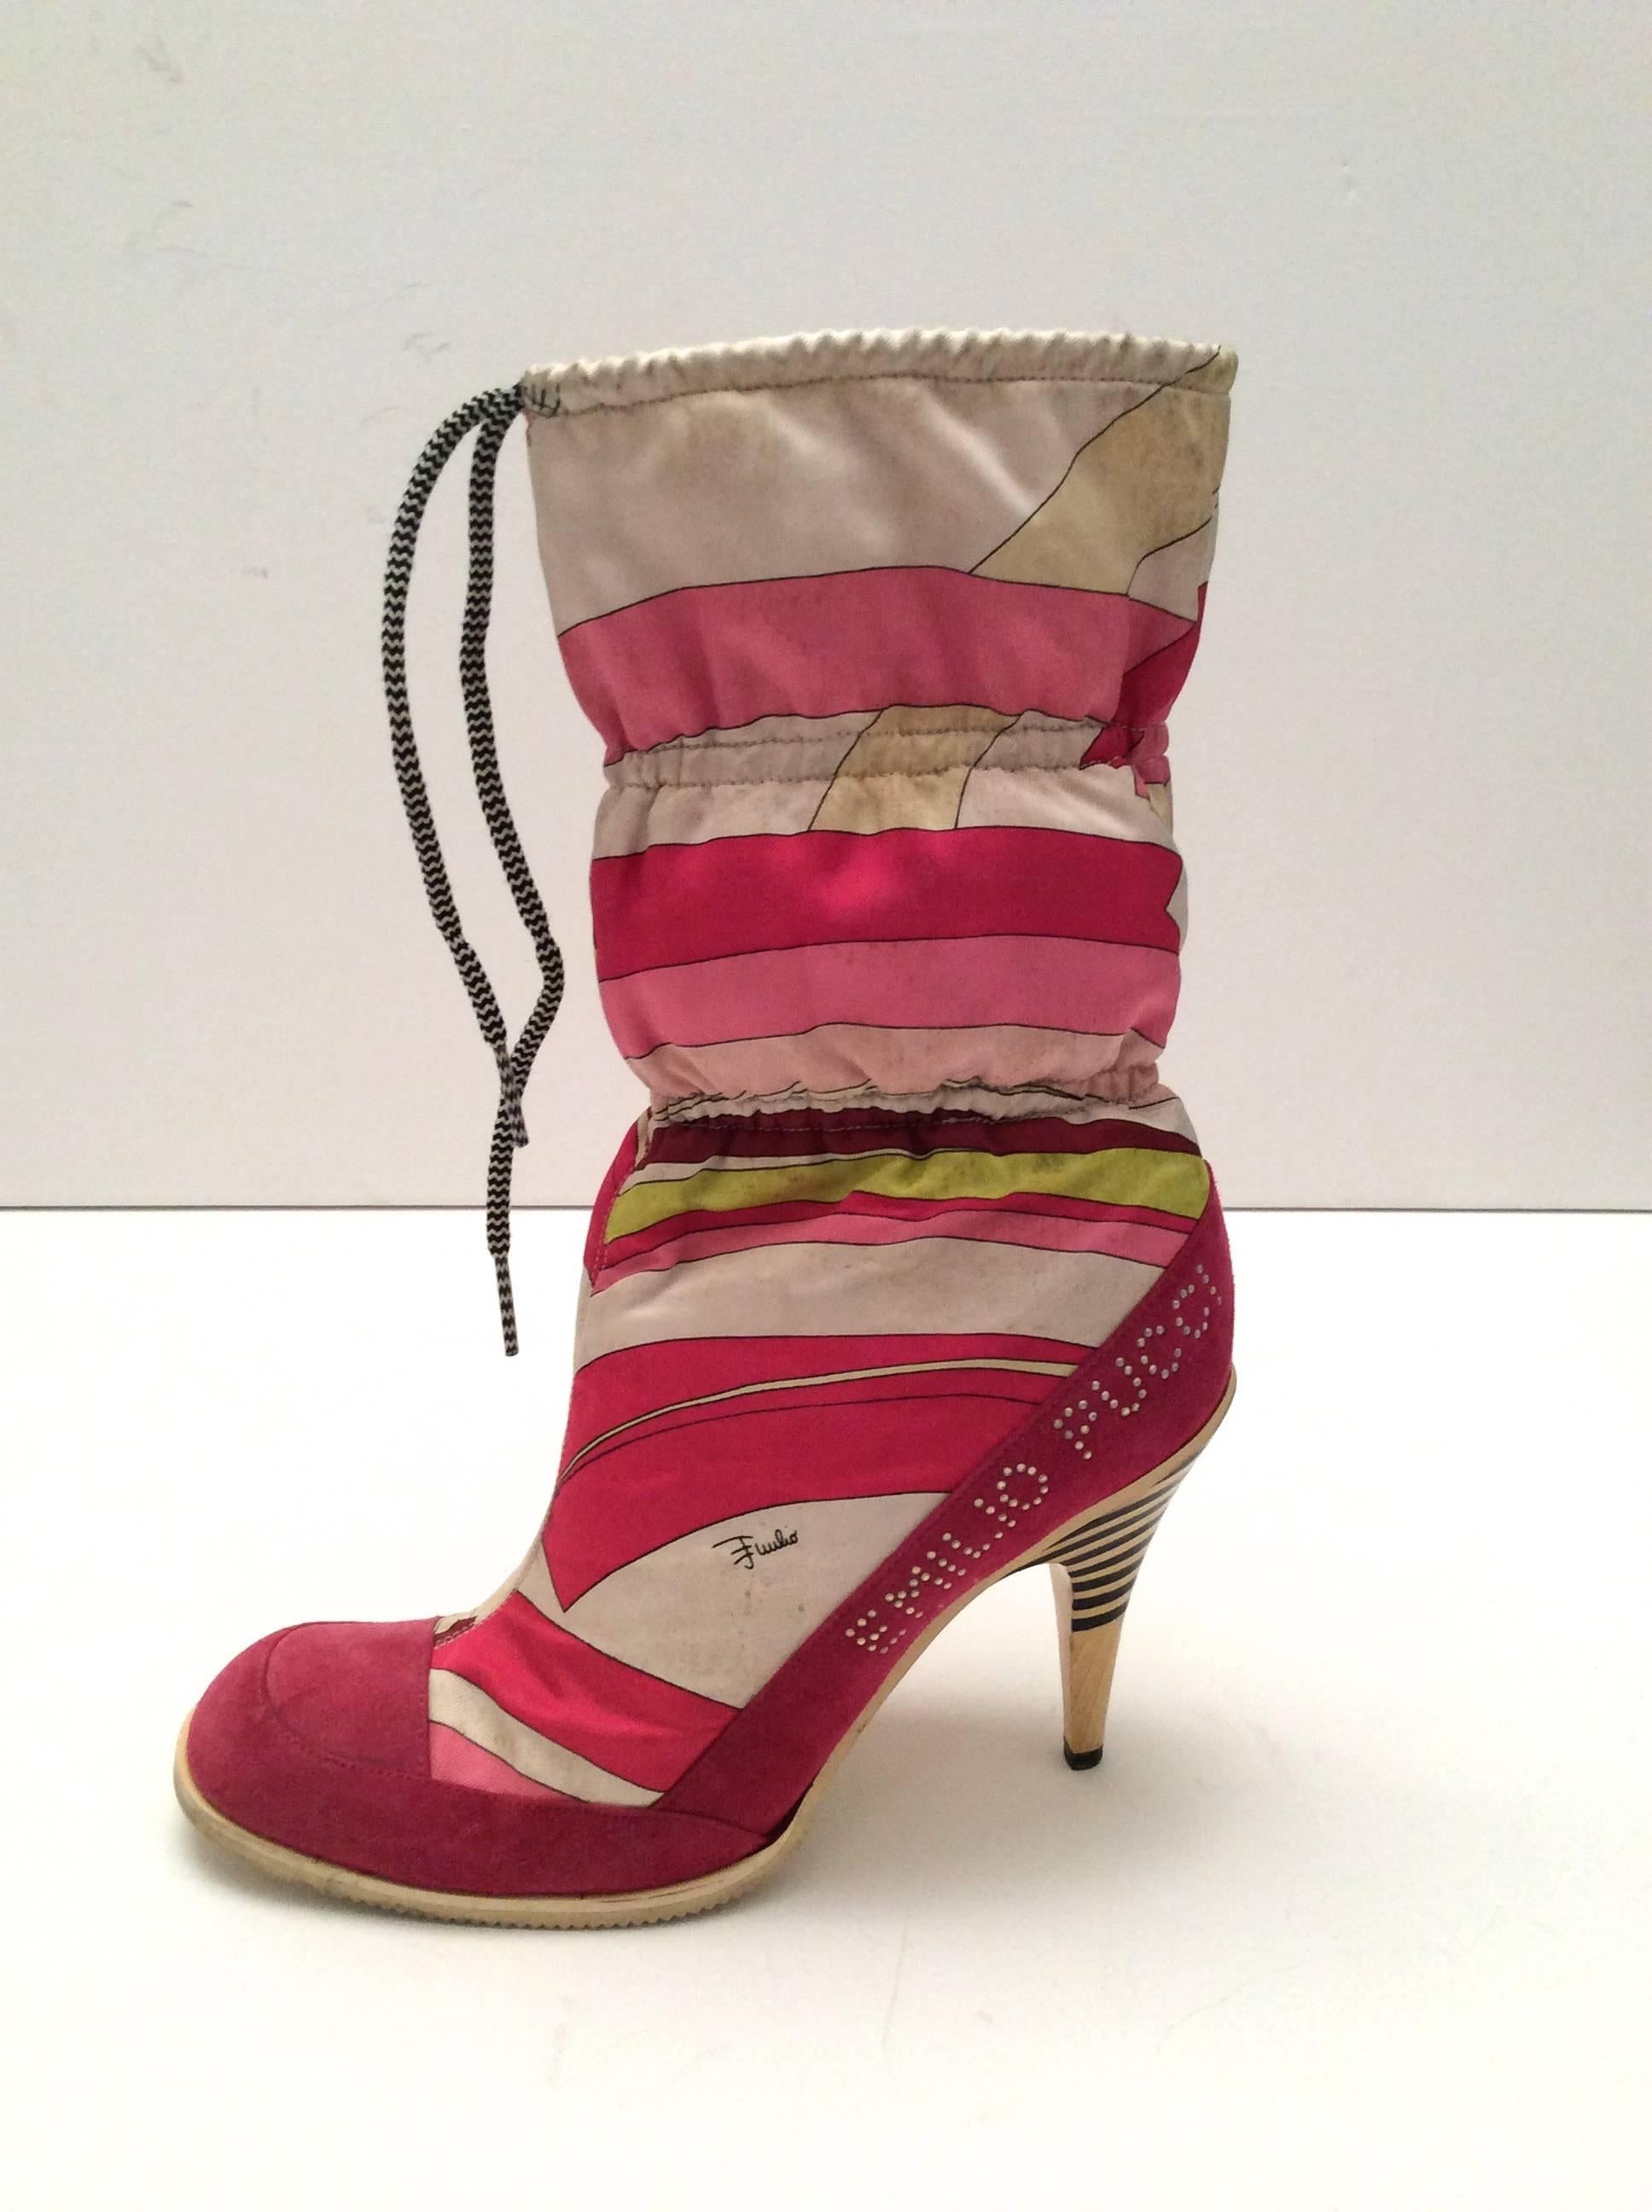 Emilio Pucci Vintage Boots - Size 38 1